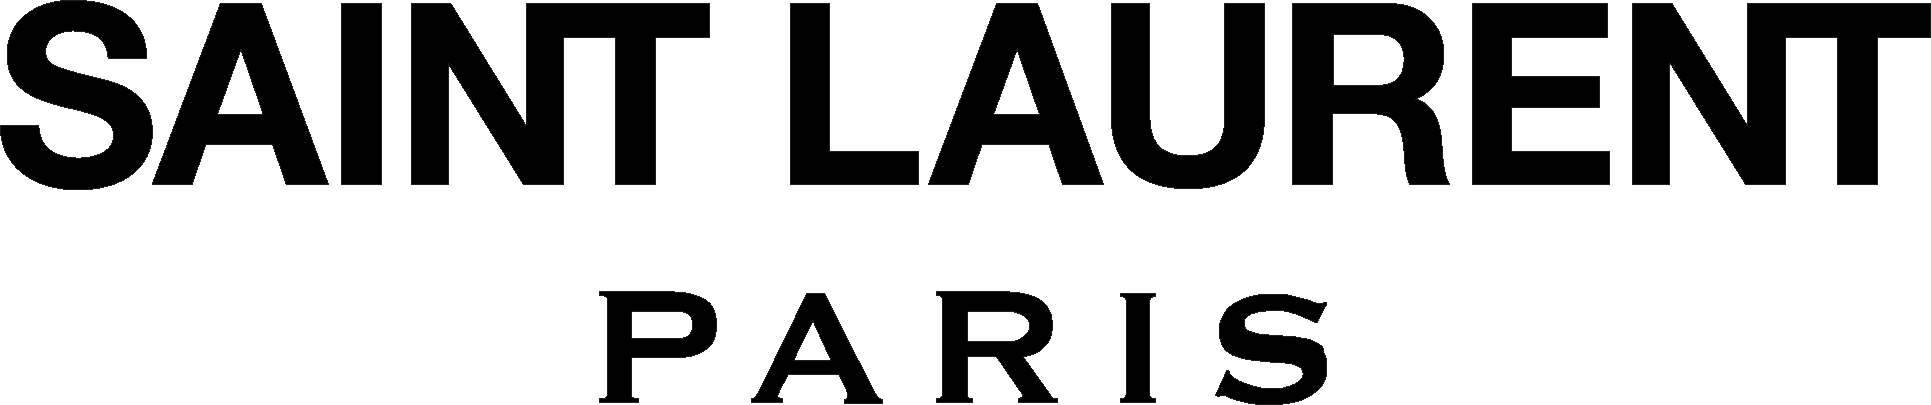 Saint Laurent Paris Logo PNG image